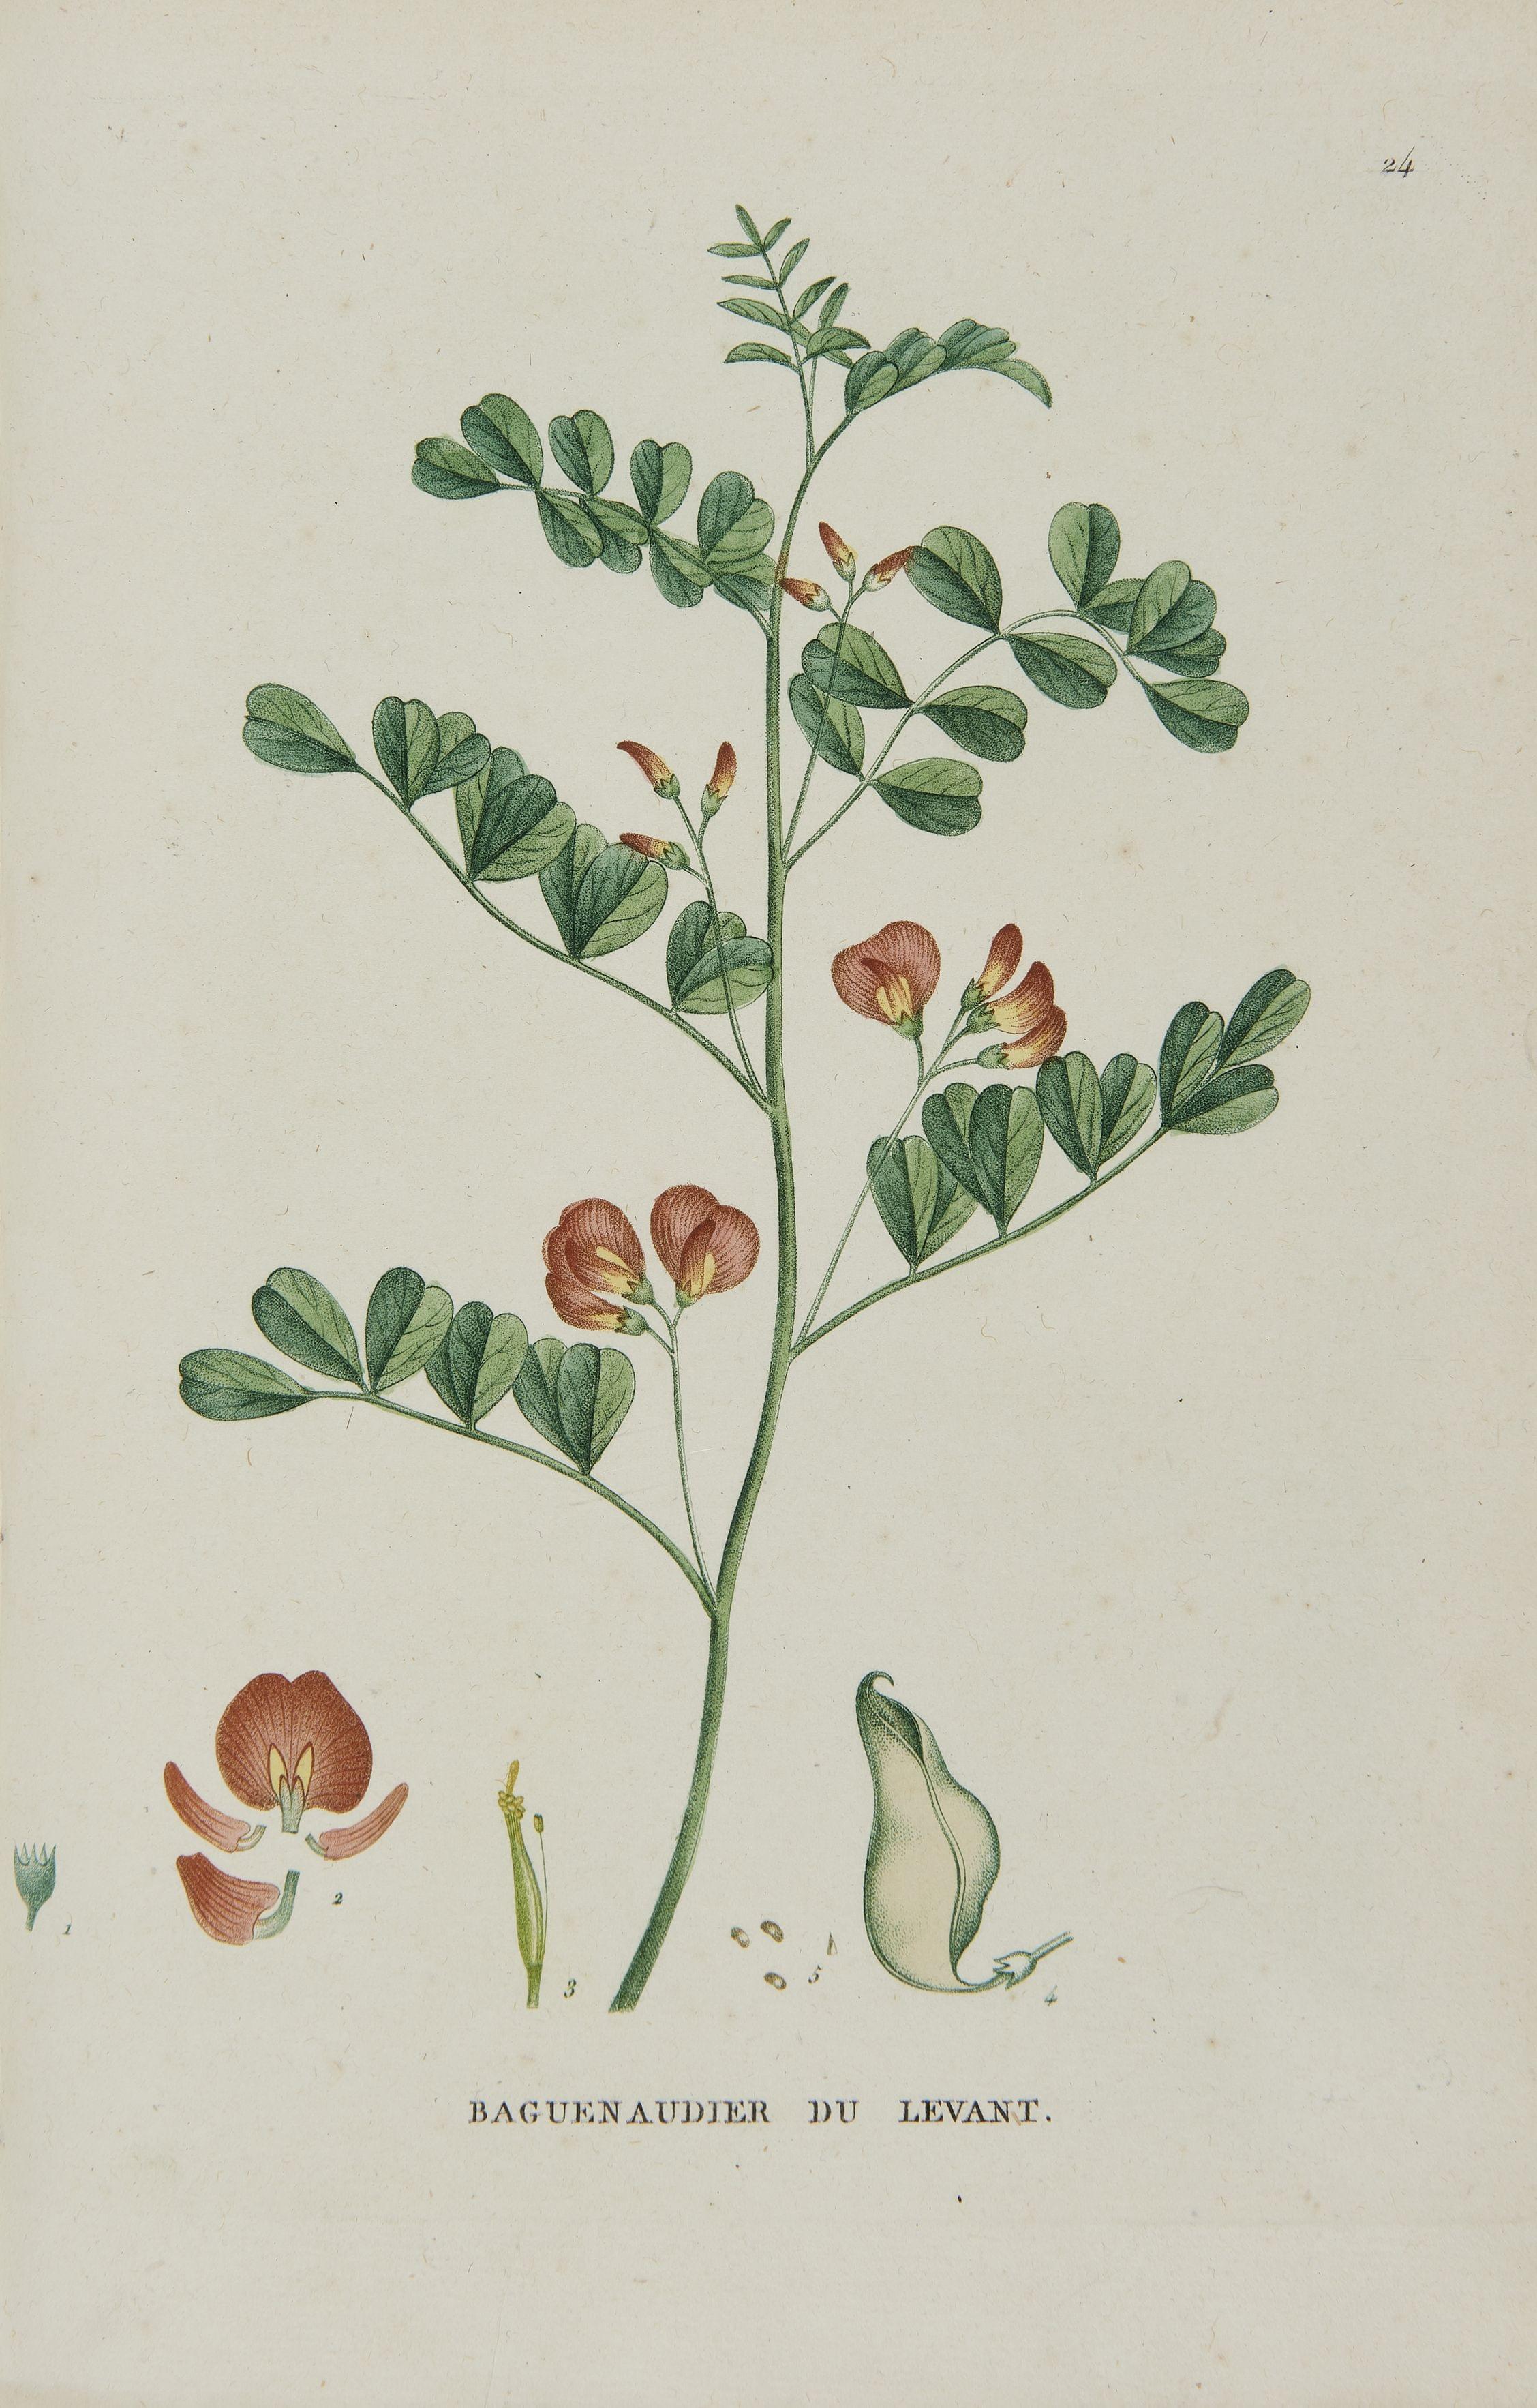 JAUME SAINT-HILAIRE: Traité des Arbrissaux et des Arbustes Cultivés en France et en pleine terre. Paris, chez l'auteur, 1825; 